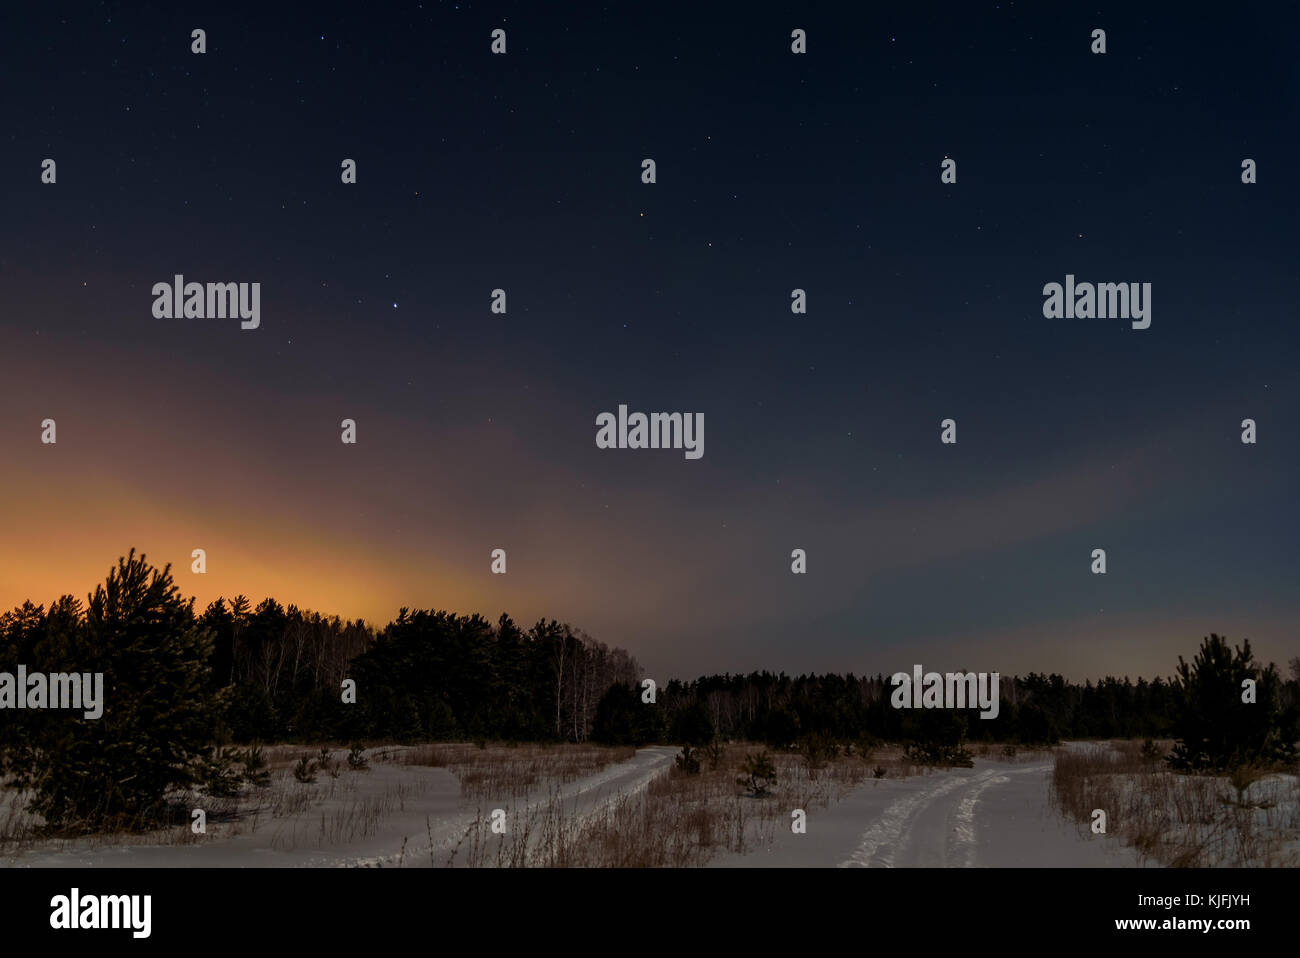 Nacht Szene mit Weihnachtsbäumen und die Straße im Winter Wald auf einem Hintergrund von Sternen und Sky Stockfoto